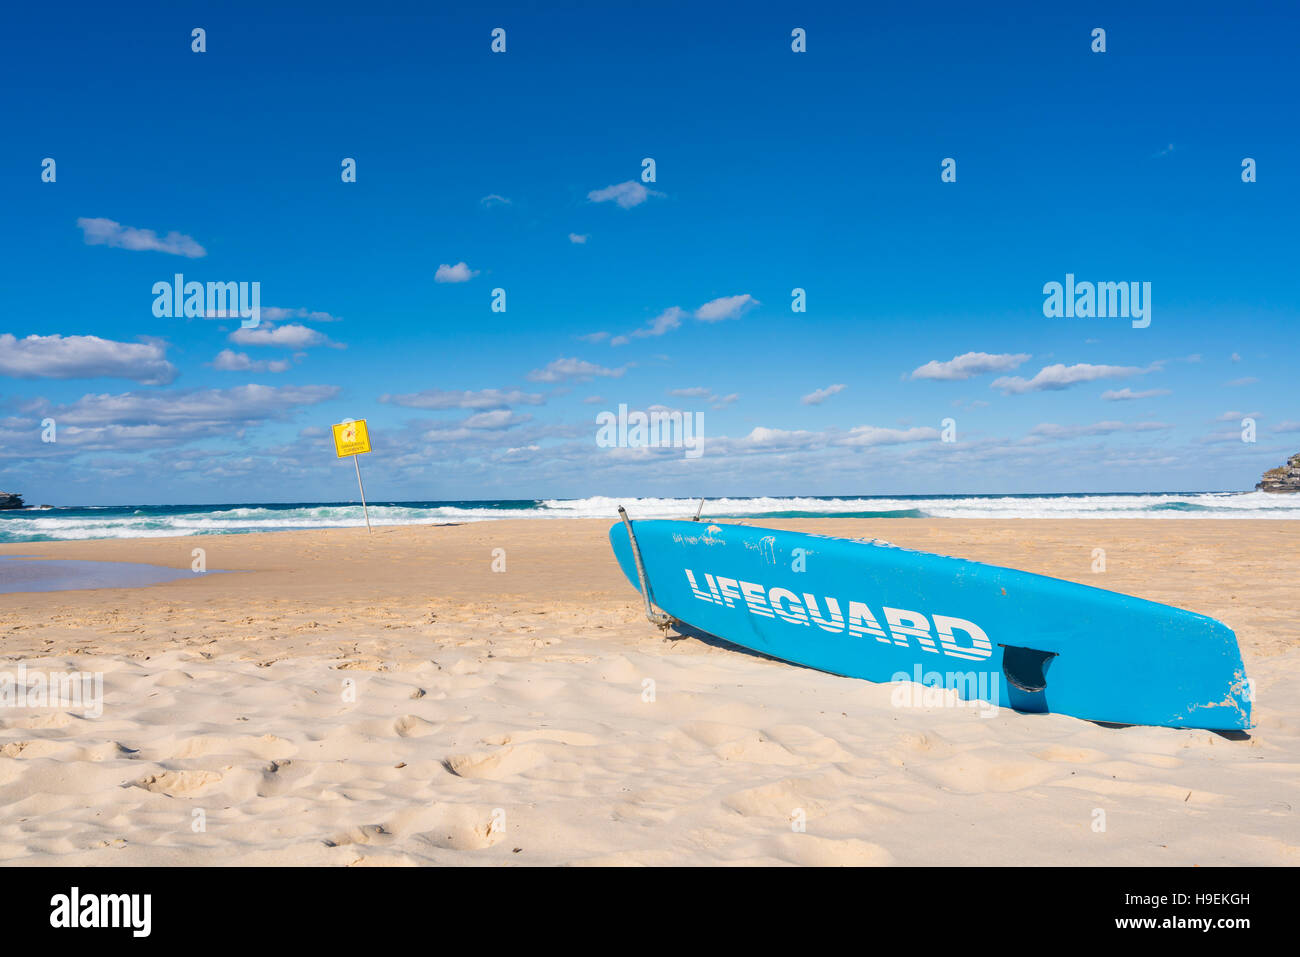 Lifeguard surfboard on beach Stock Photo